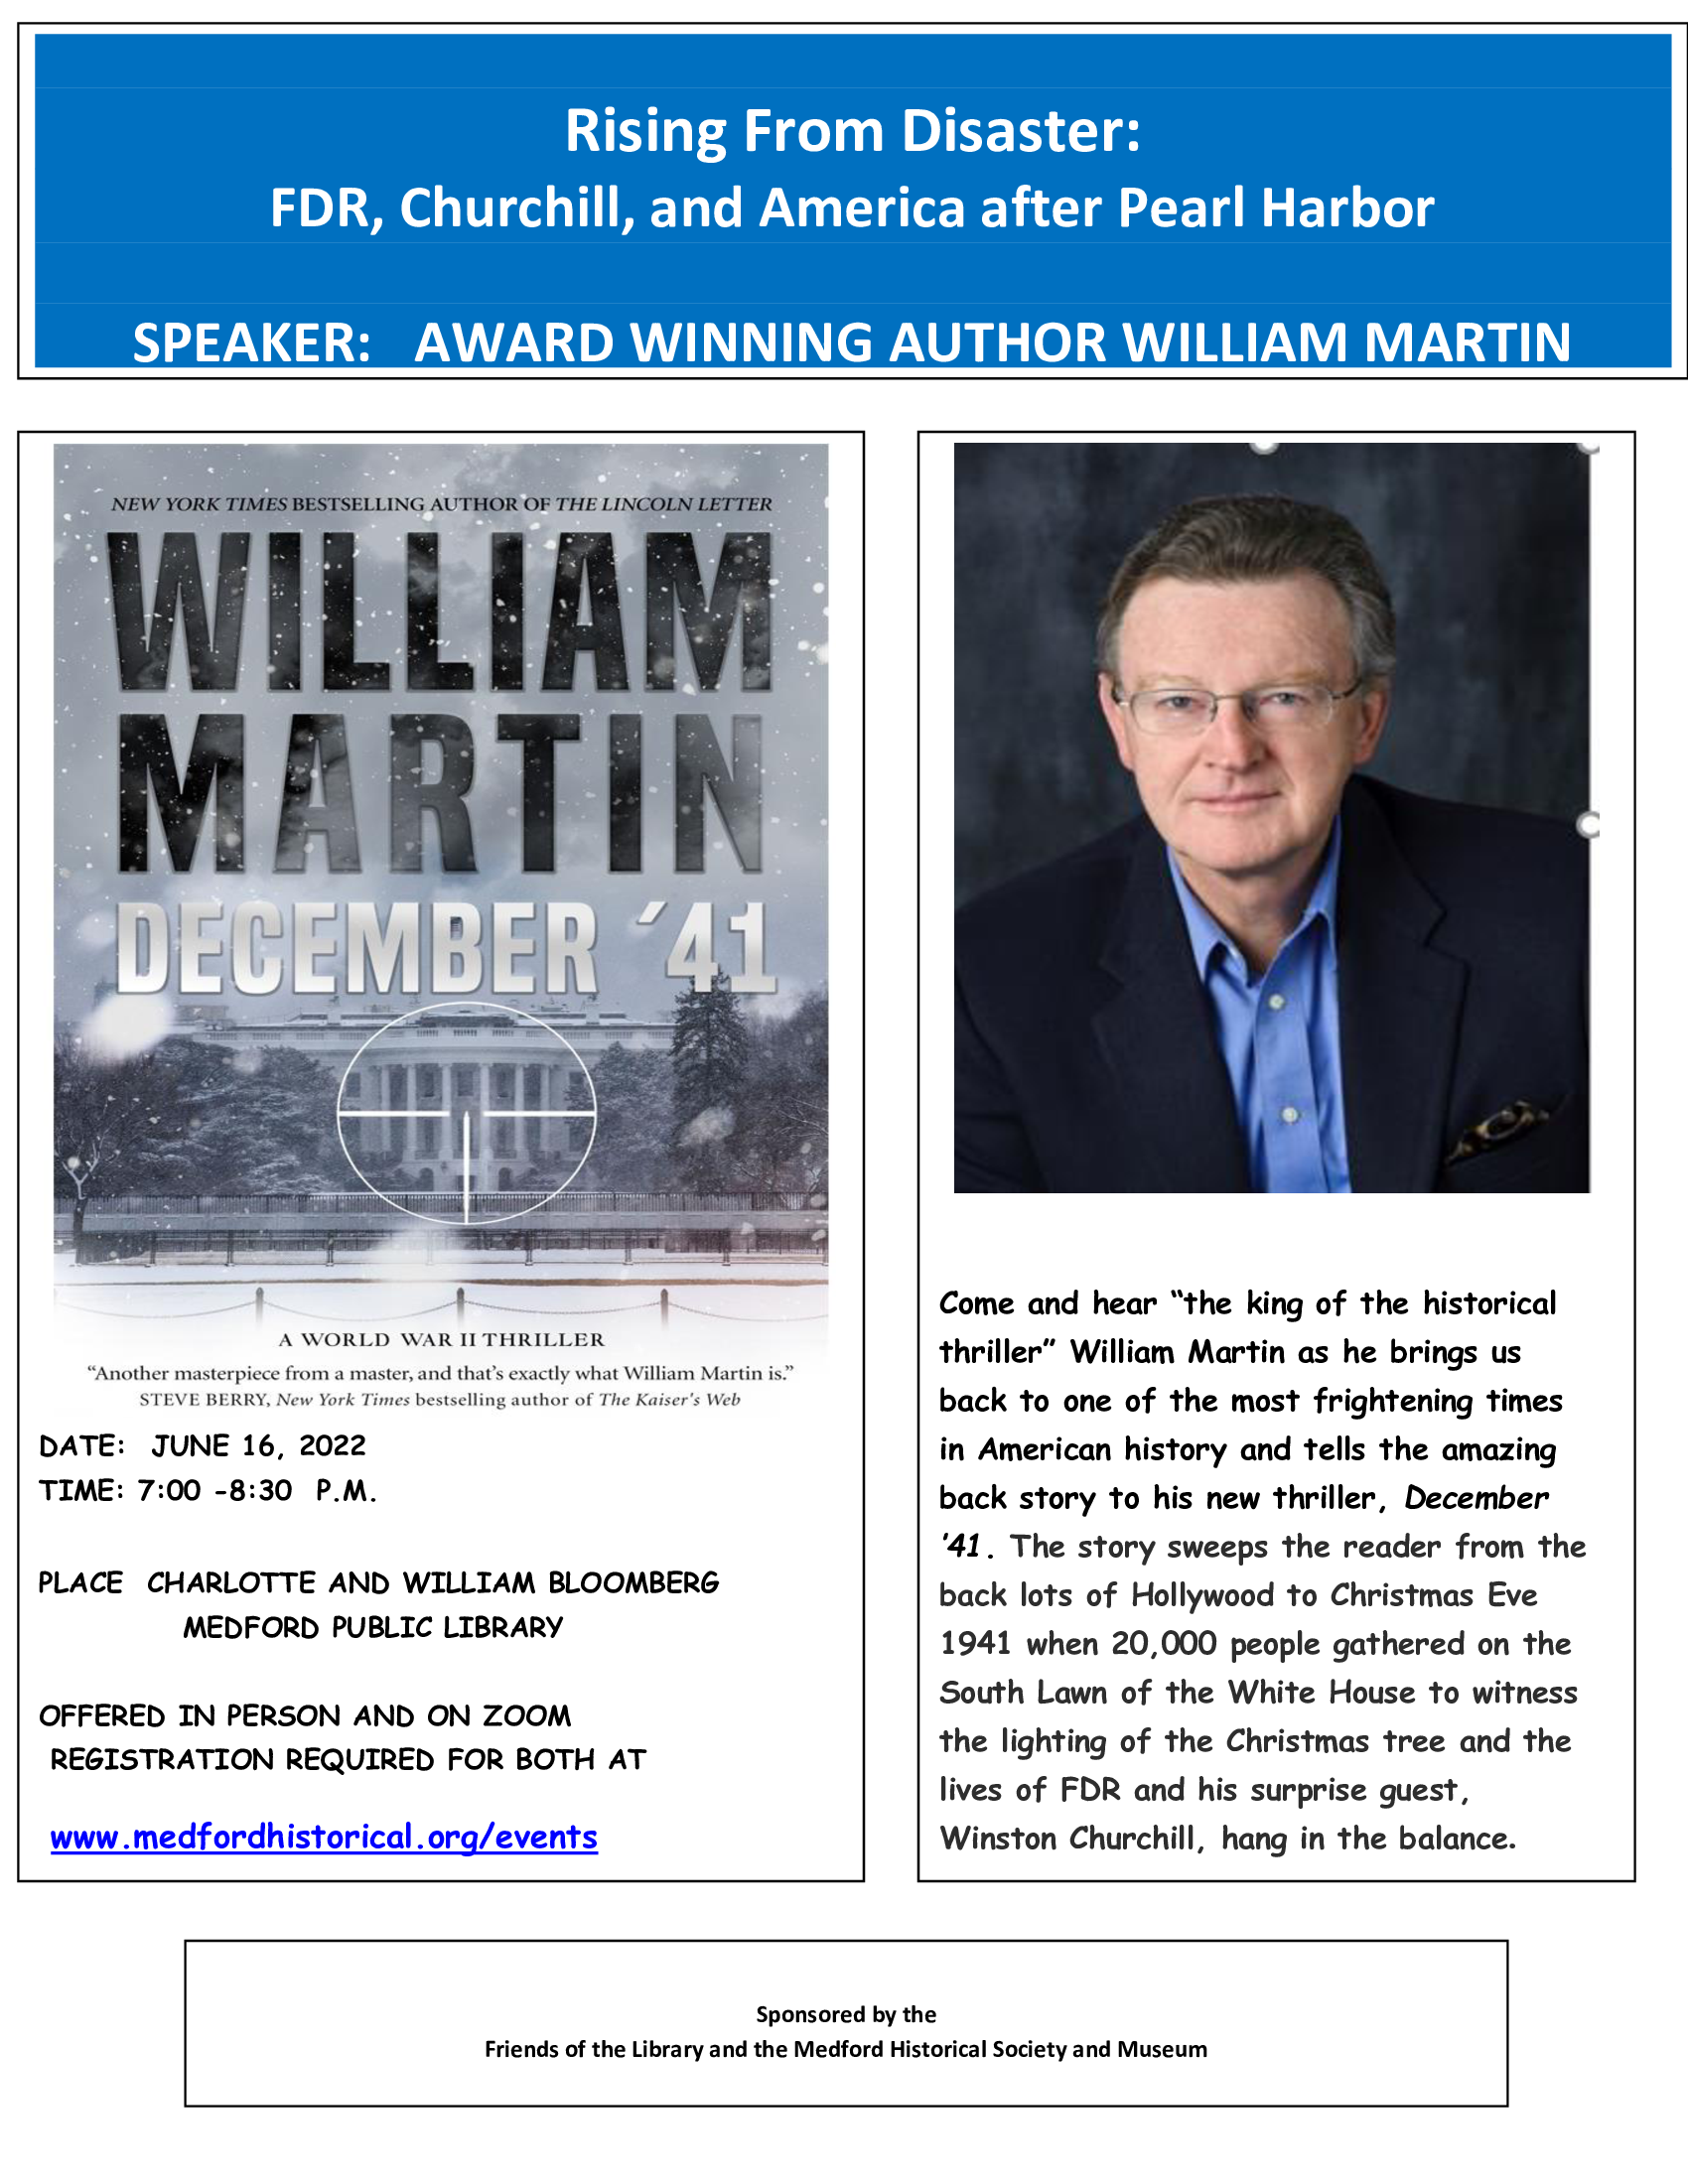 MHSM William Martin event image